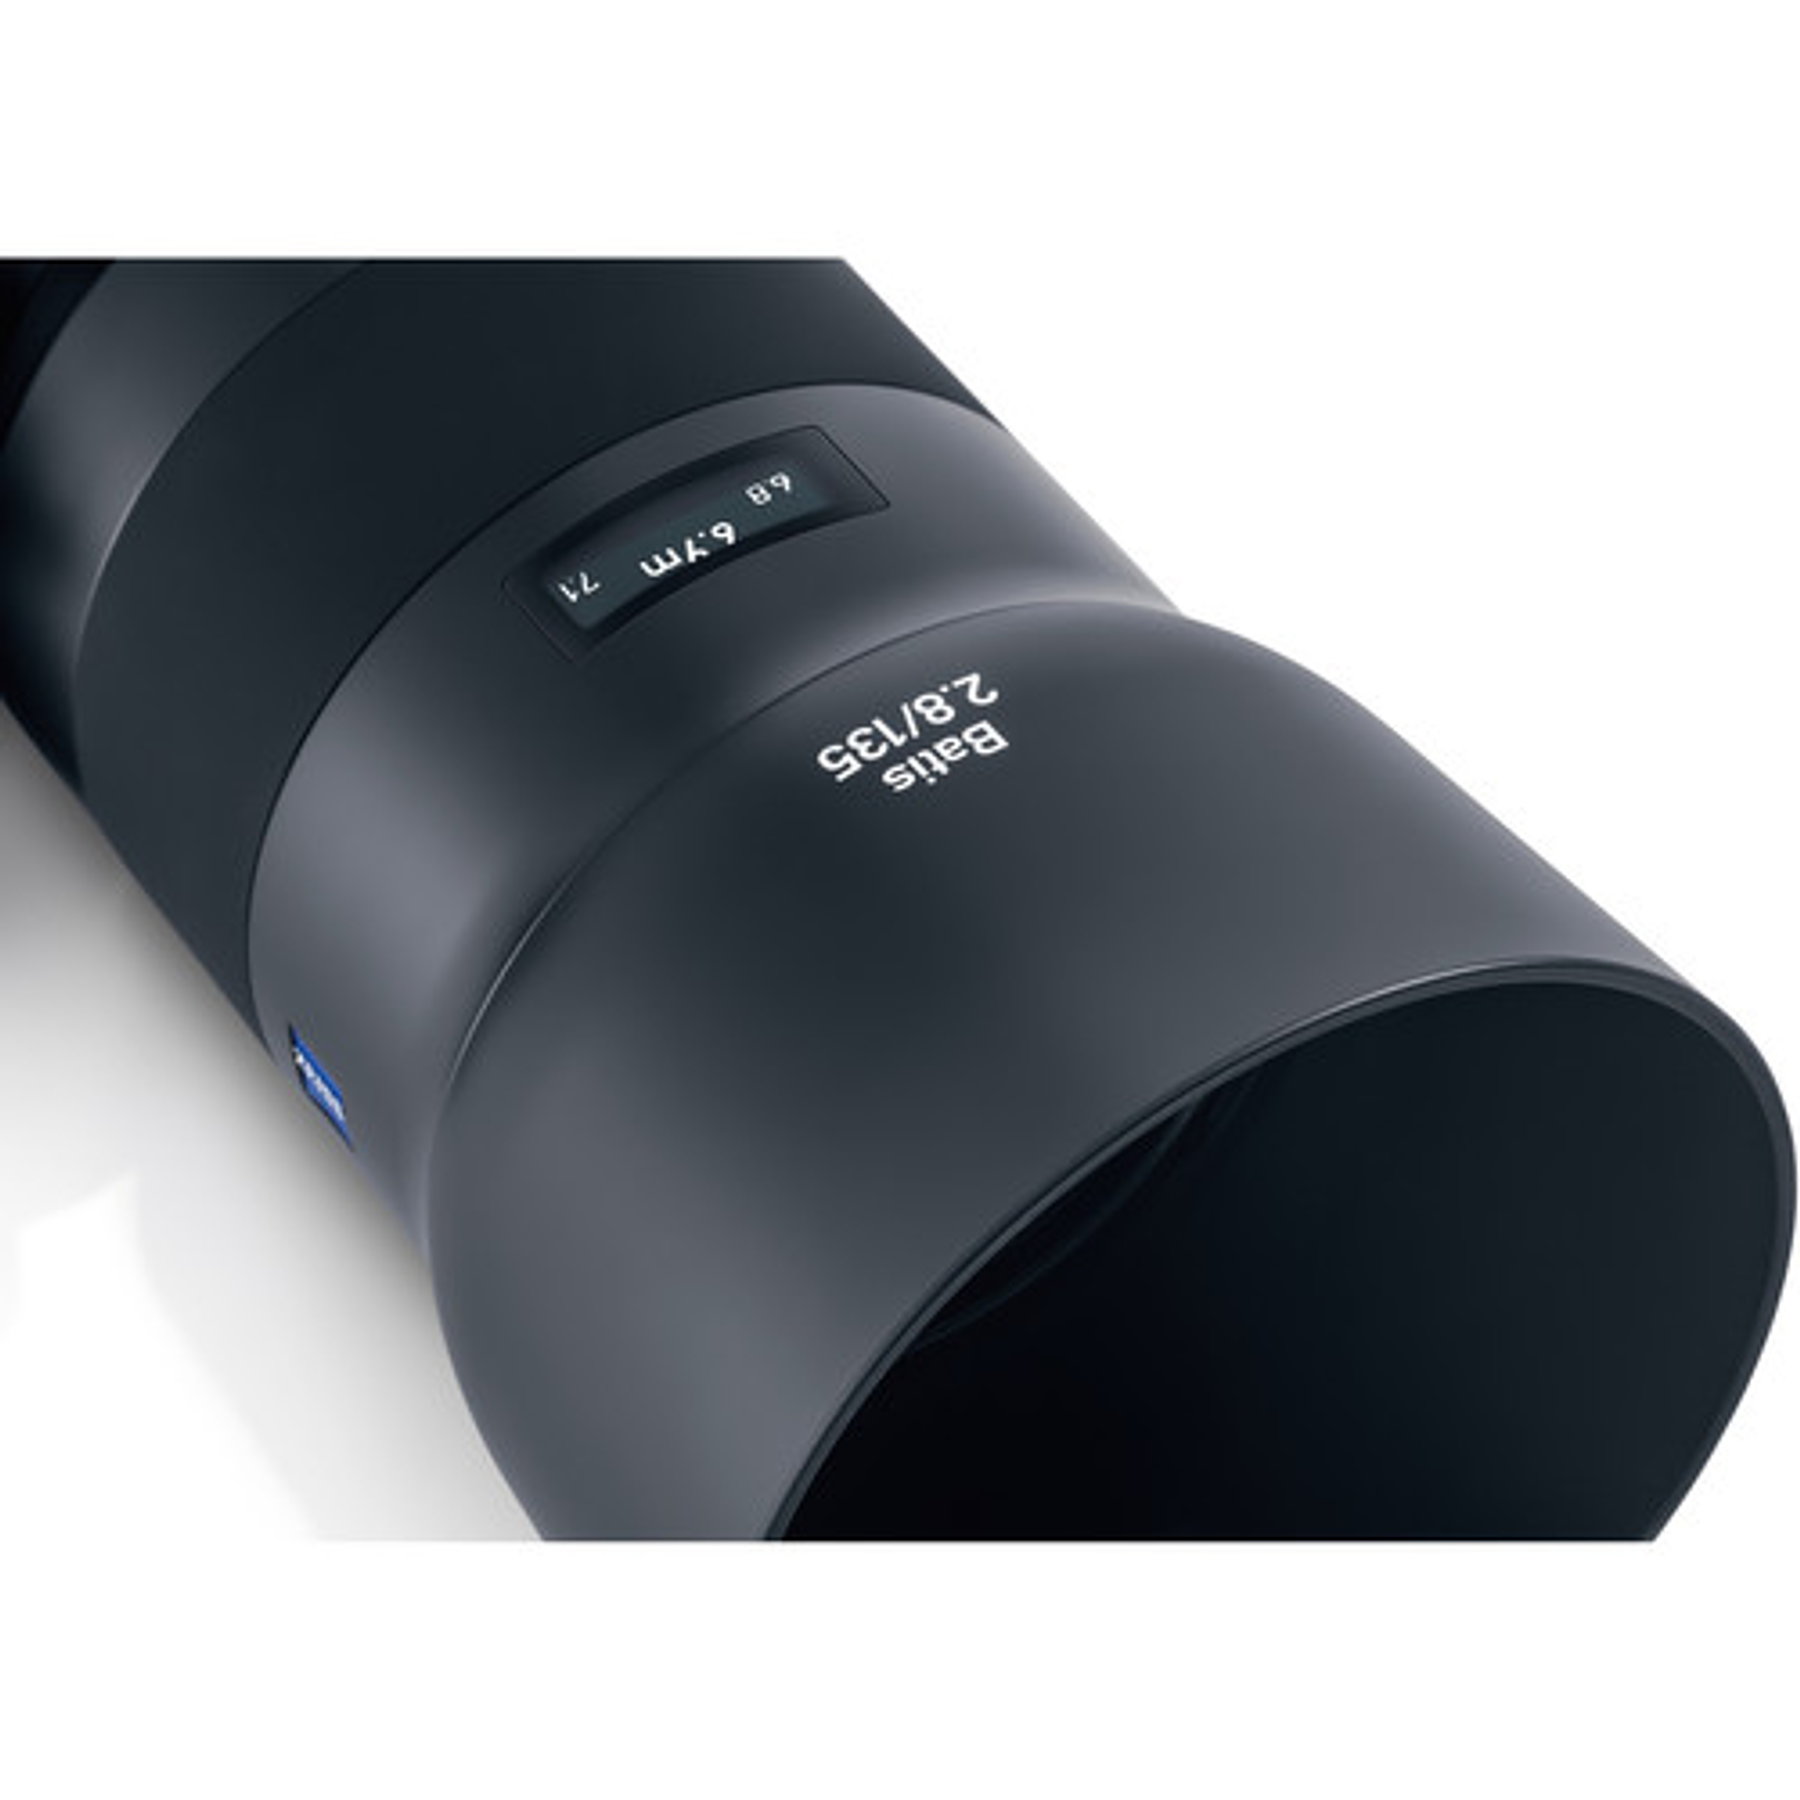 Zeiss Batis 135mm f2.8 Sony FE